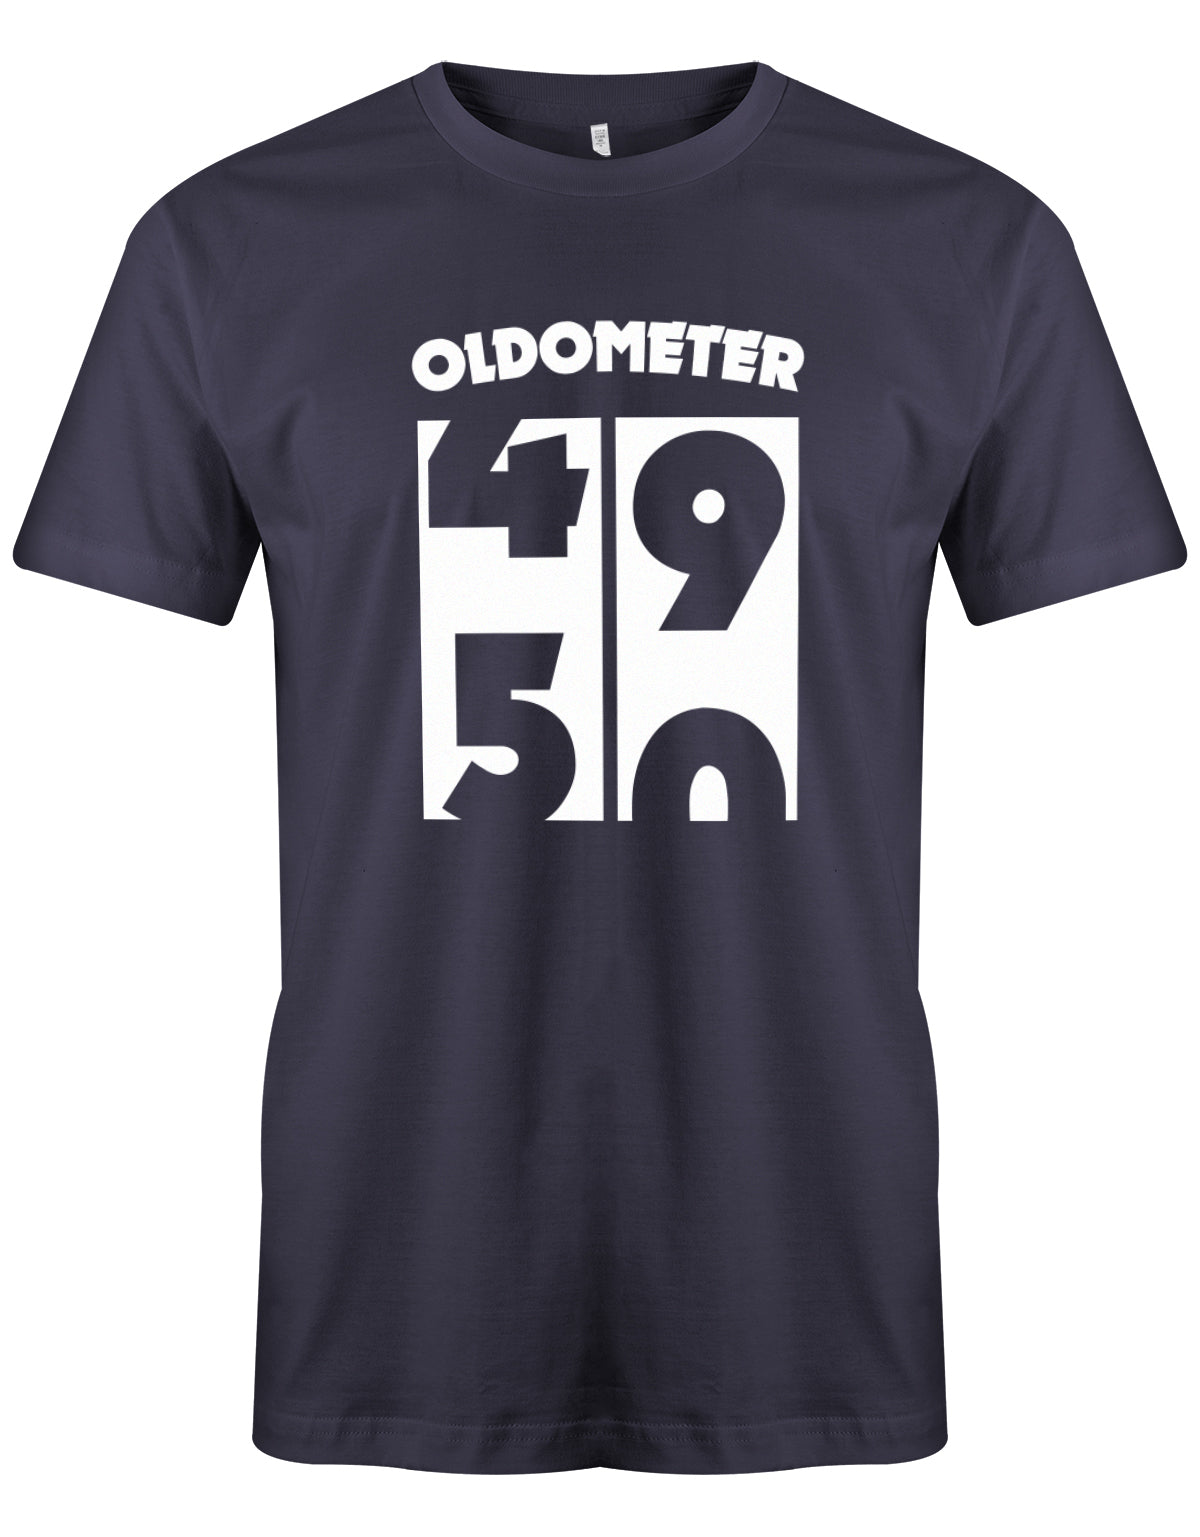 Lustiges T-Shirt zum 50 Geburtstag für den Mann Bedruckt mit Oldometer von 49 wechsel zu 50 Jahren. Navy